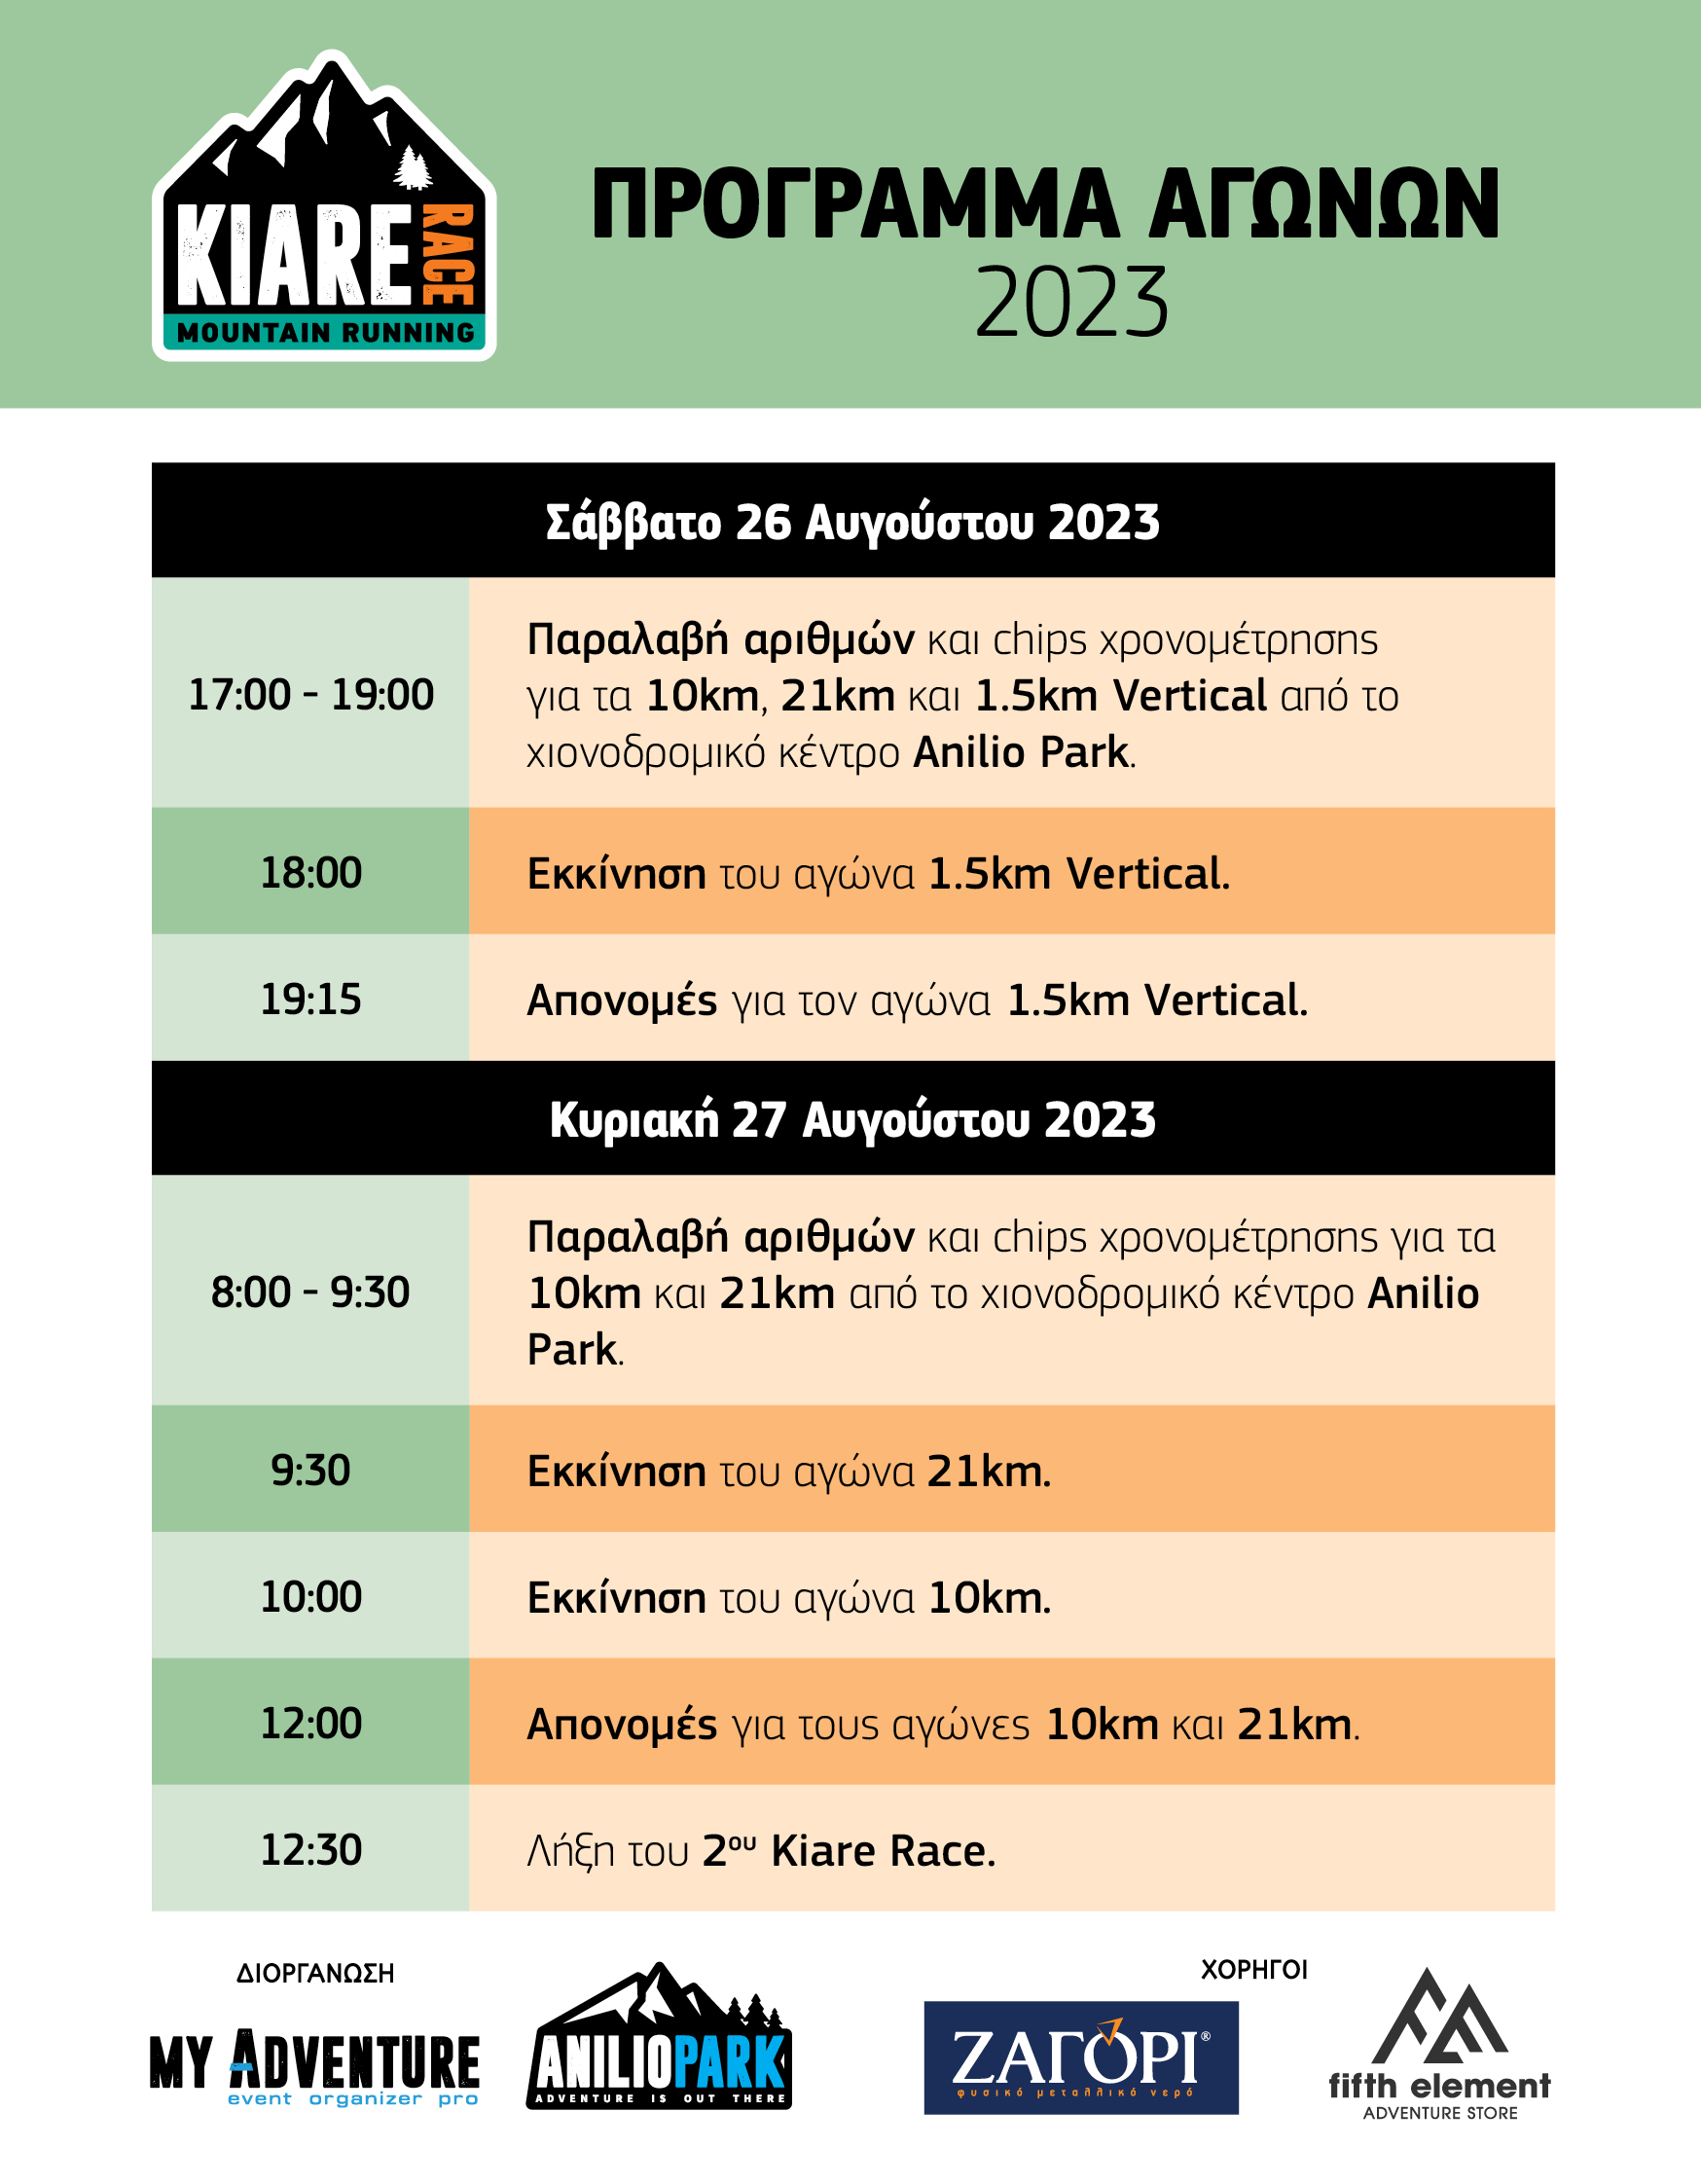 Πρόγραμμα Kiare Race 2023